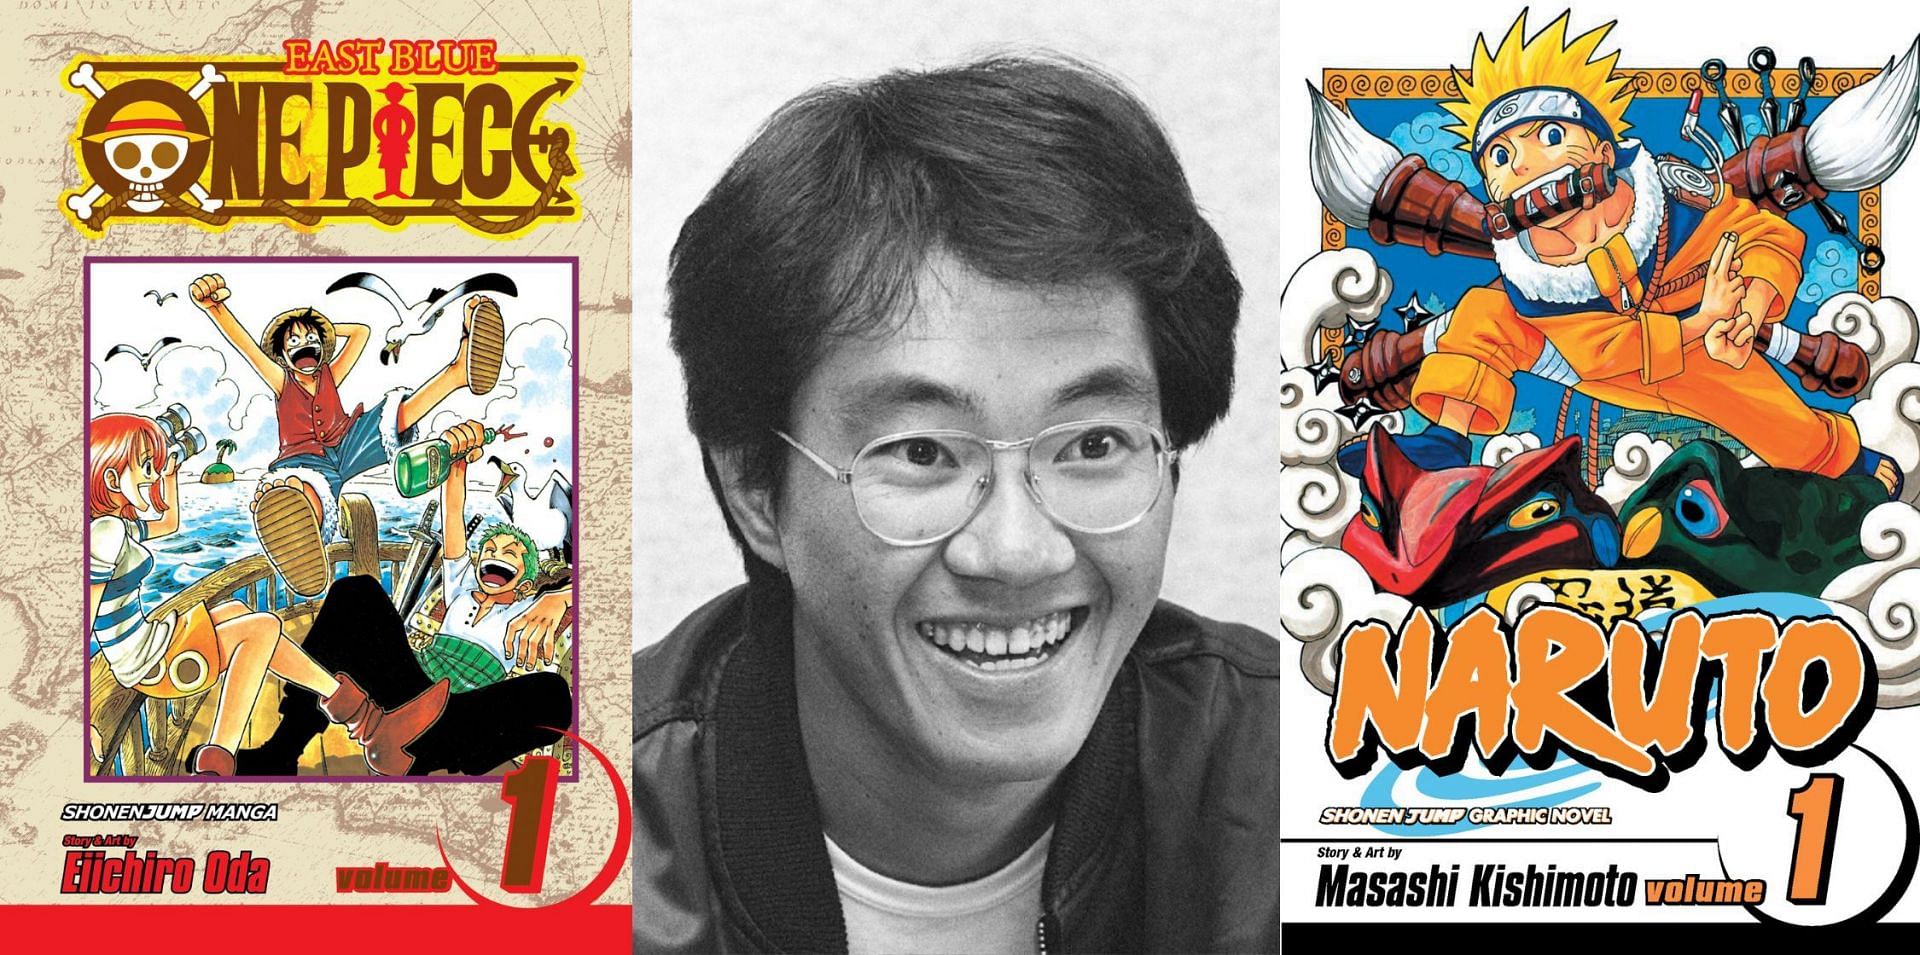 Dragon Ball creator Akira Toriyama